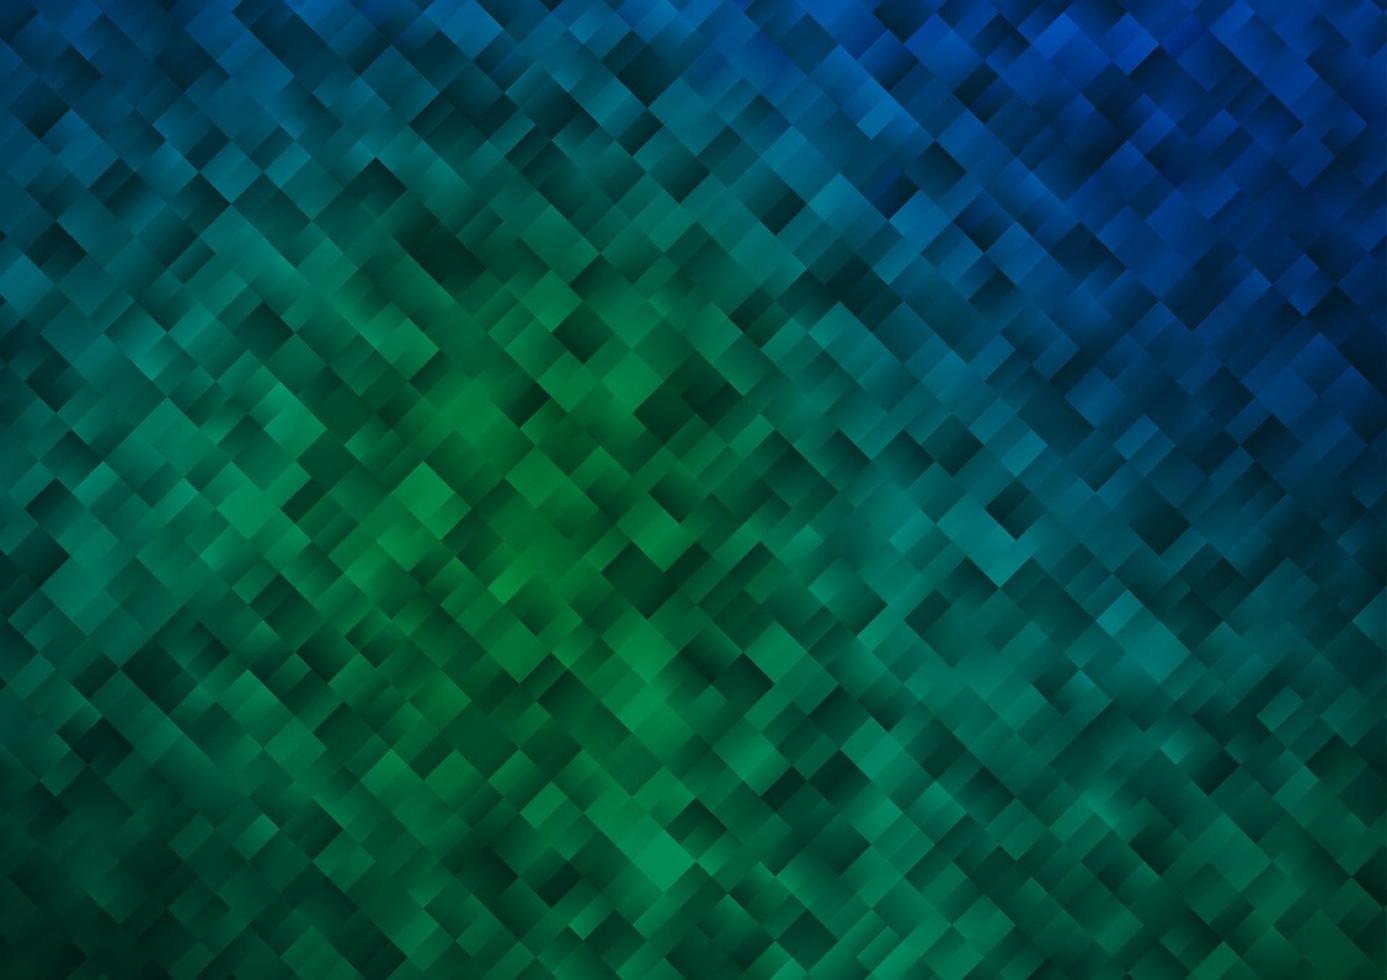 cenário de vetor azul escuro, verde com retângulos, quadrados.